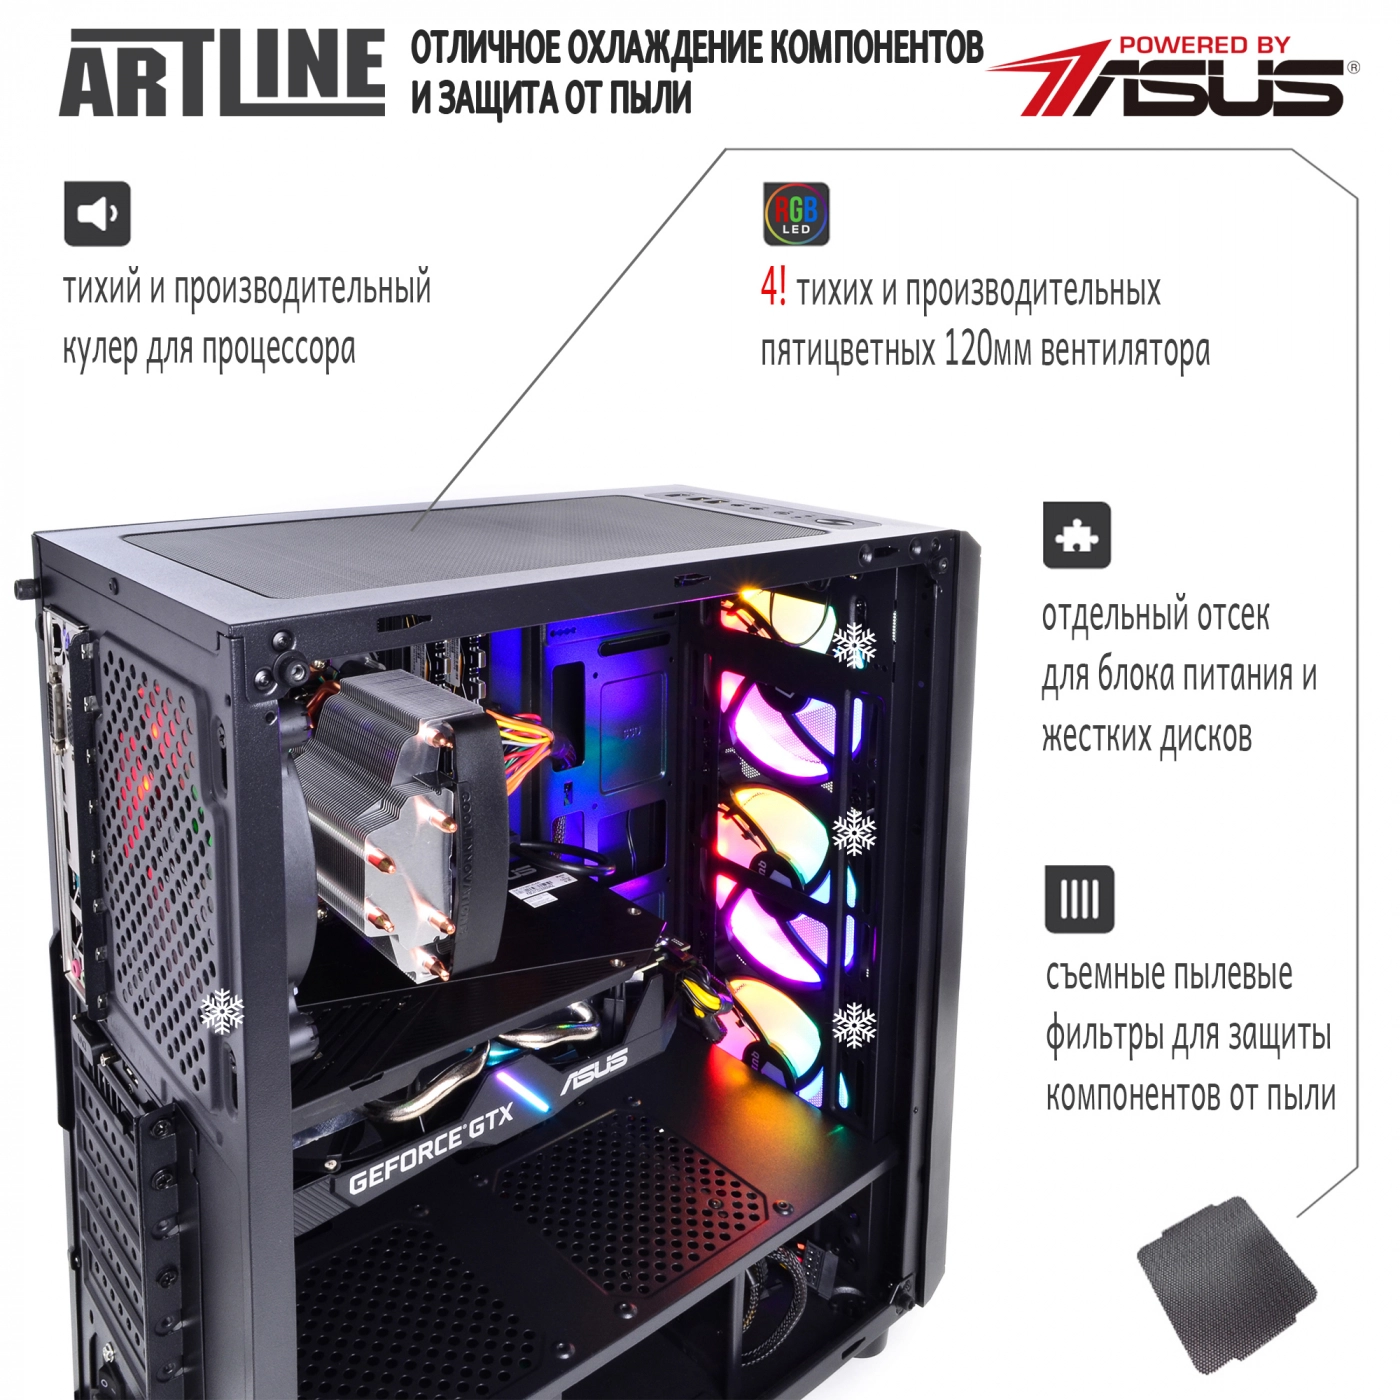 Купить Компьютер ARTLINE Gaming X36v07 - фото 3